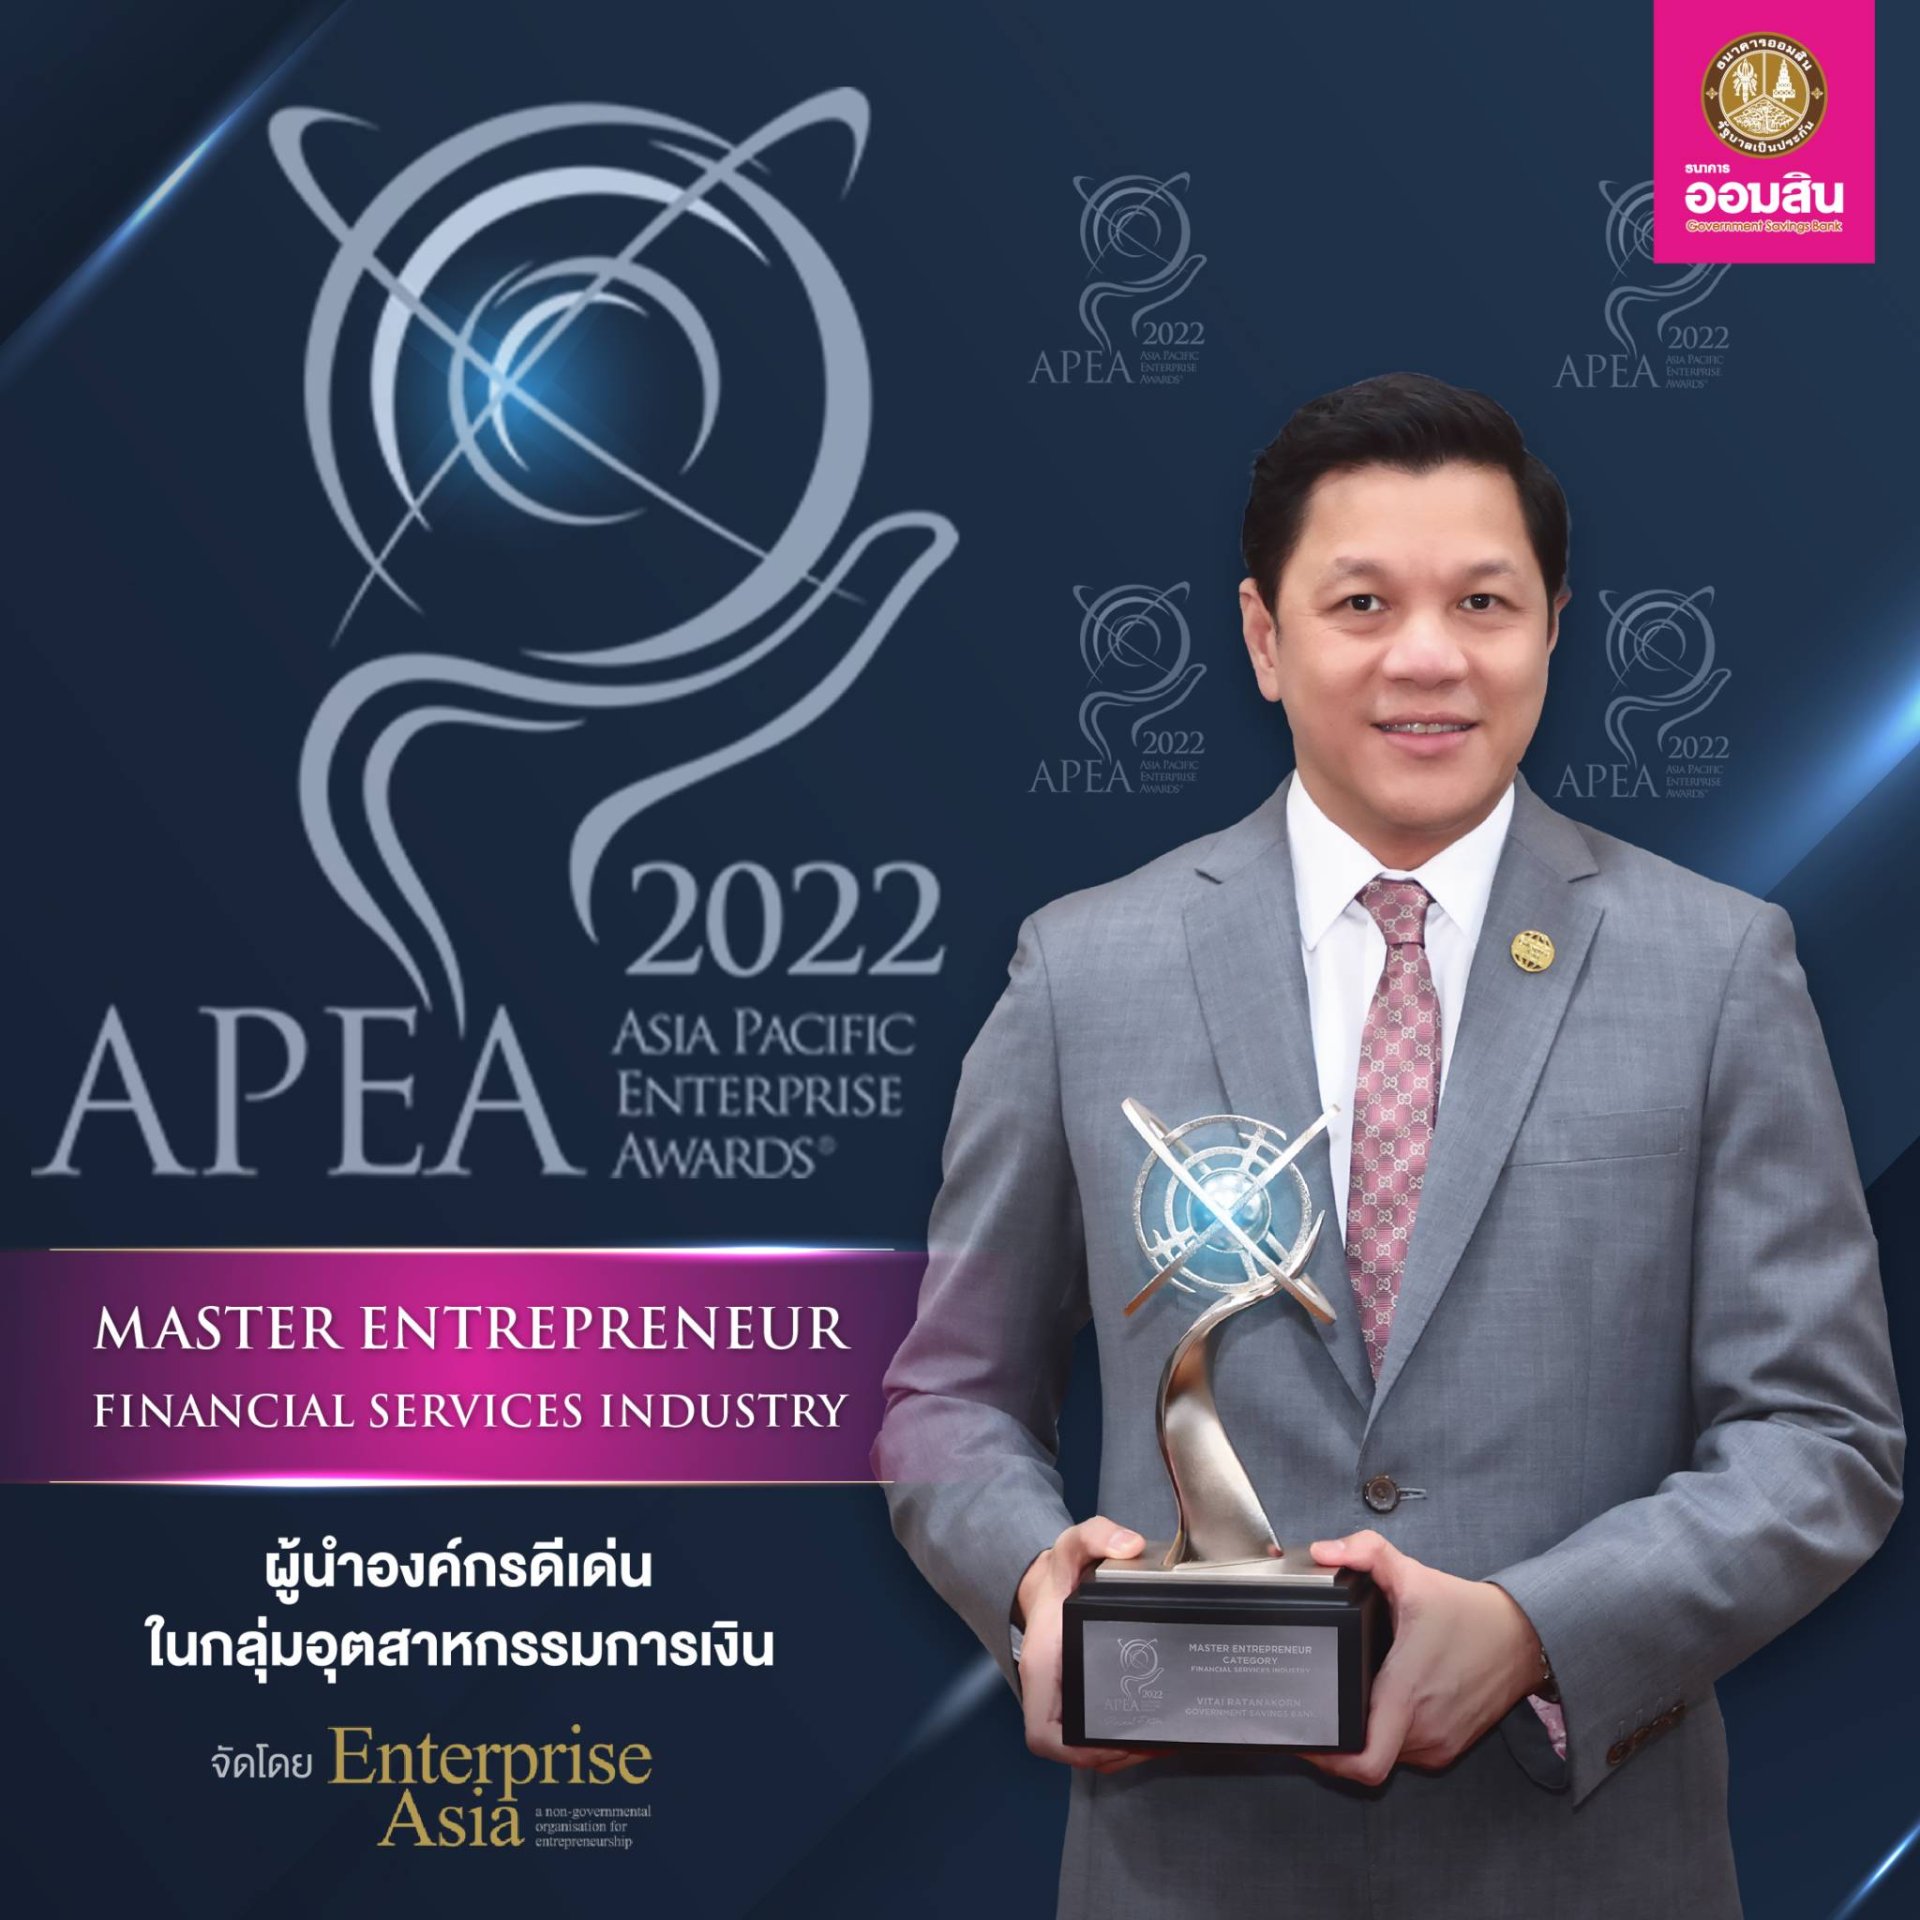 ผอ.ออมสิน คว้ารางวัลผู้นำองค์กรยอดเยี่ยม Master Entrepreneur Award จากเวทีนานาชาติ APEA 2022 